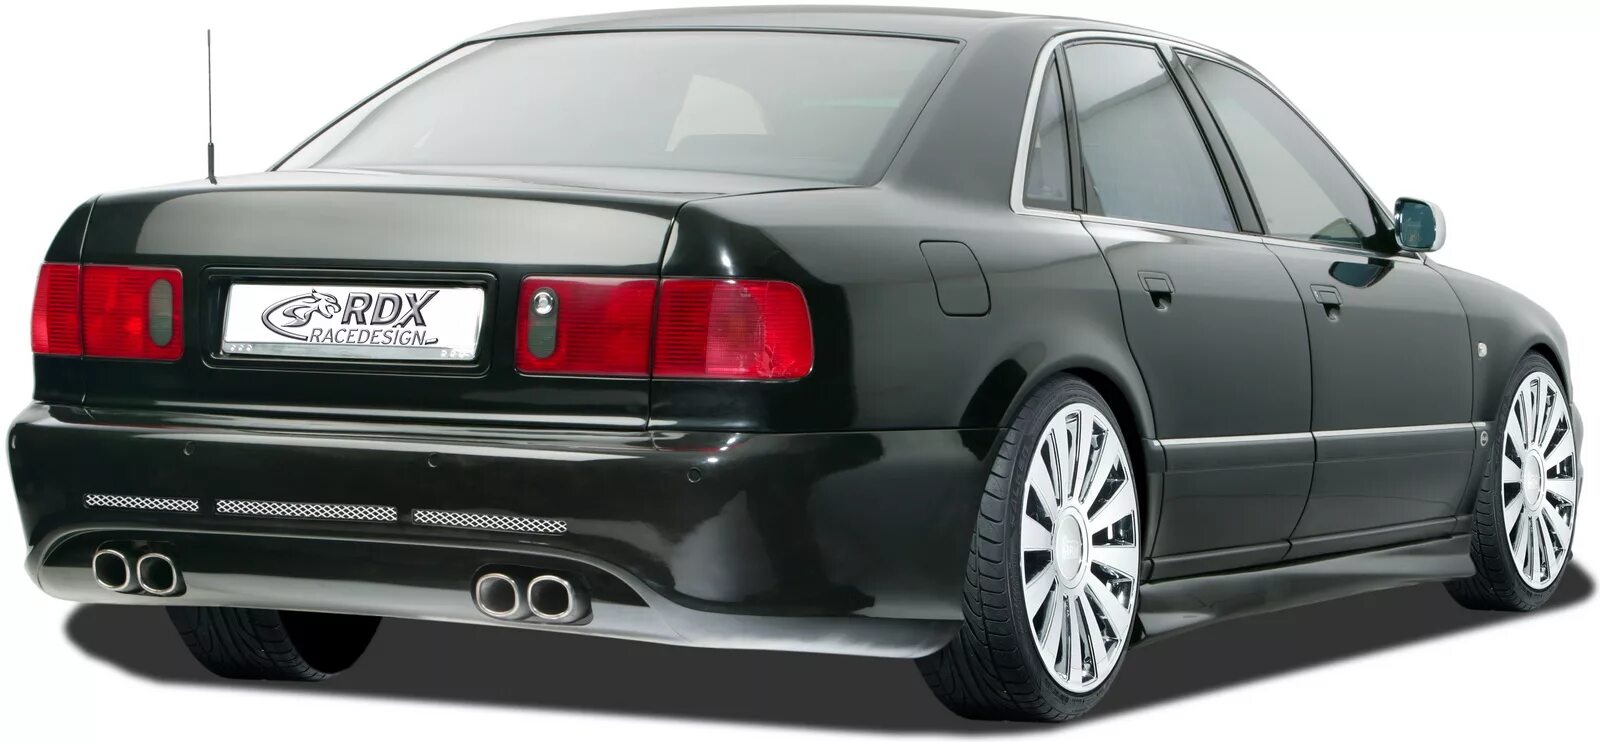 Audi a8 d2. Audi a8 d2 1999. Audi a8 d2 ABT. Audi a8 d2 w12.